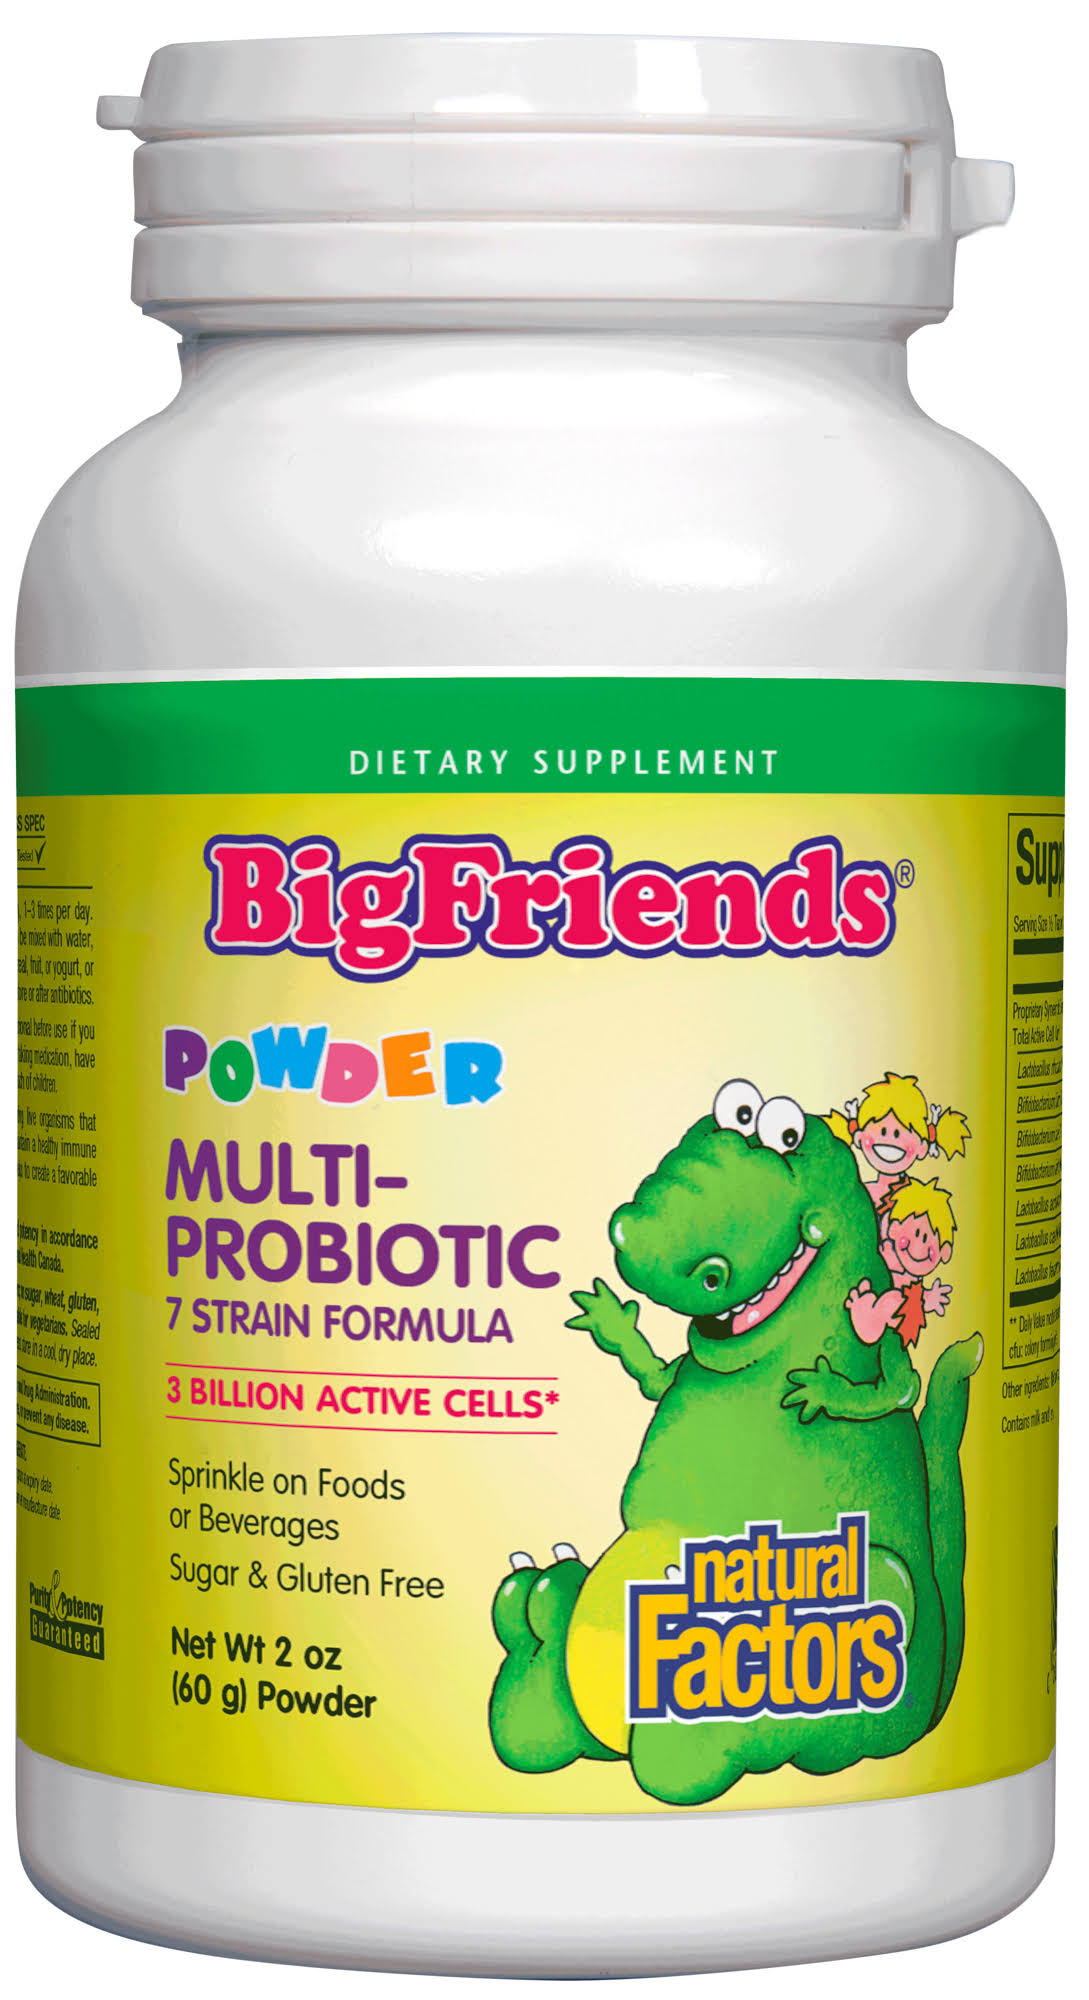 Natural Factors - Big Friends Multi-Probiotic Powder 2 oz